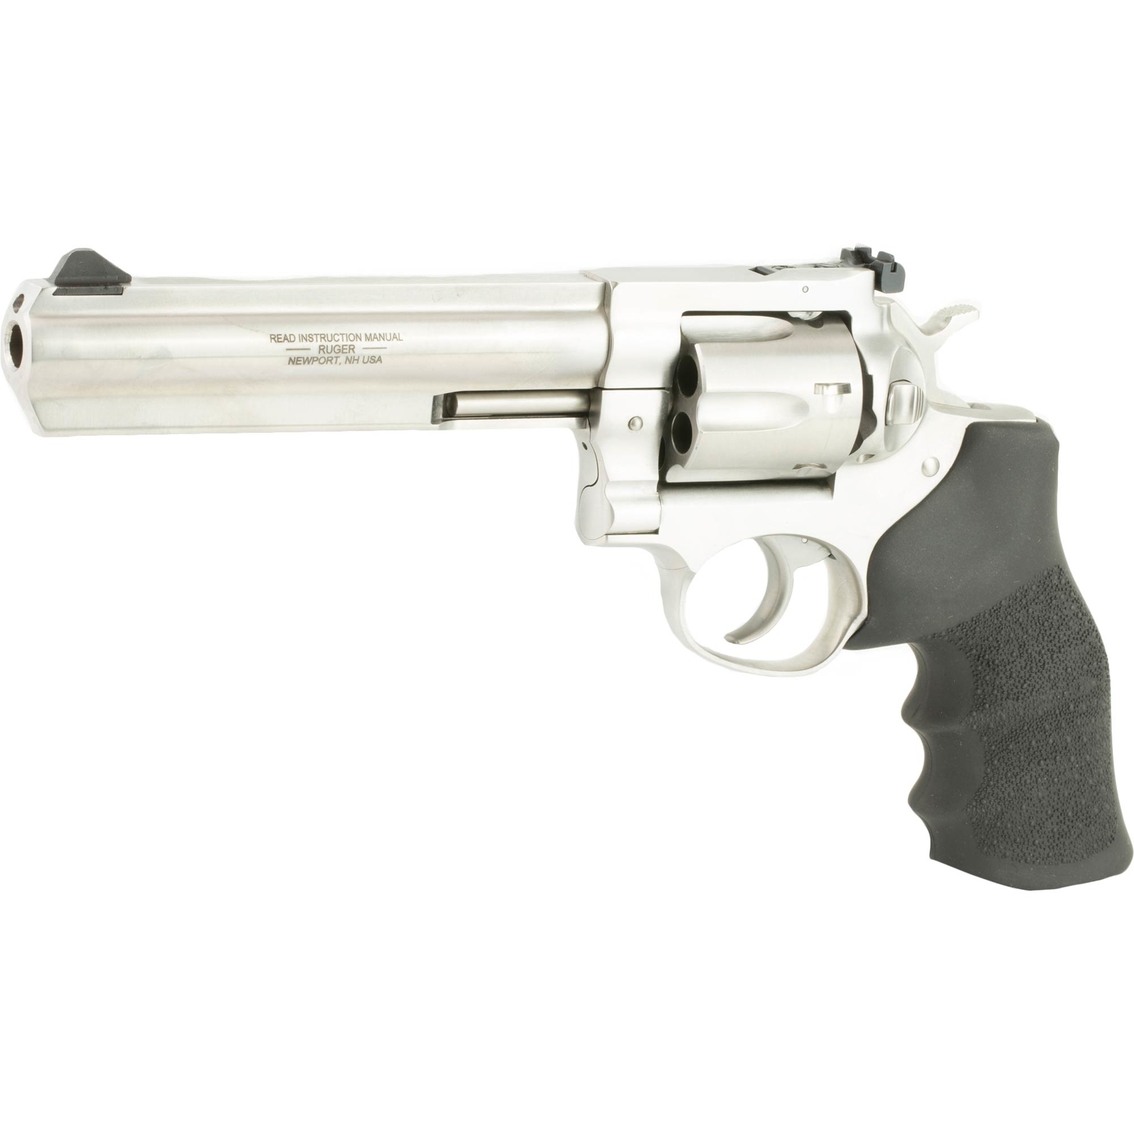 Ruger GP100 Standard 357 Mag 6 in. Barrel 6 Rnd Revolver Stainless Steel - Image 3 of 3